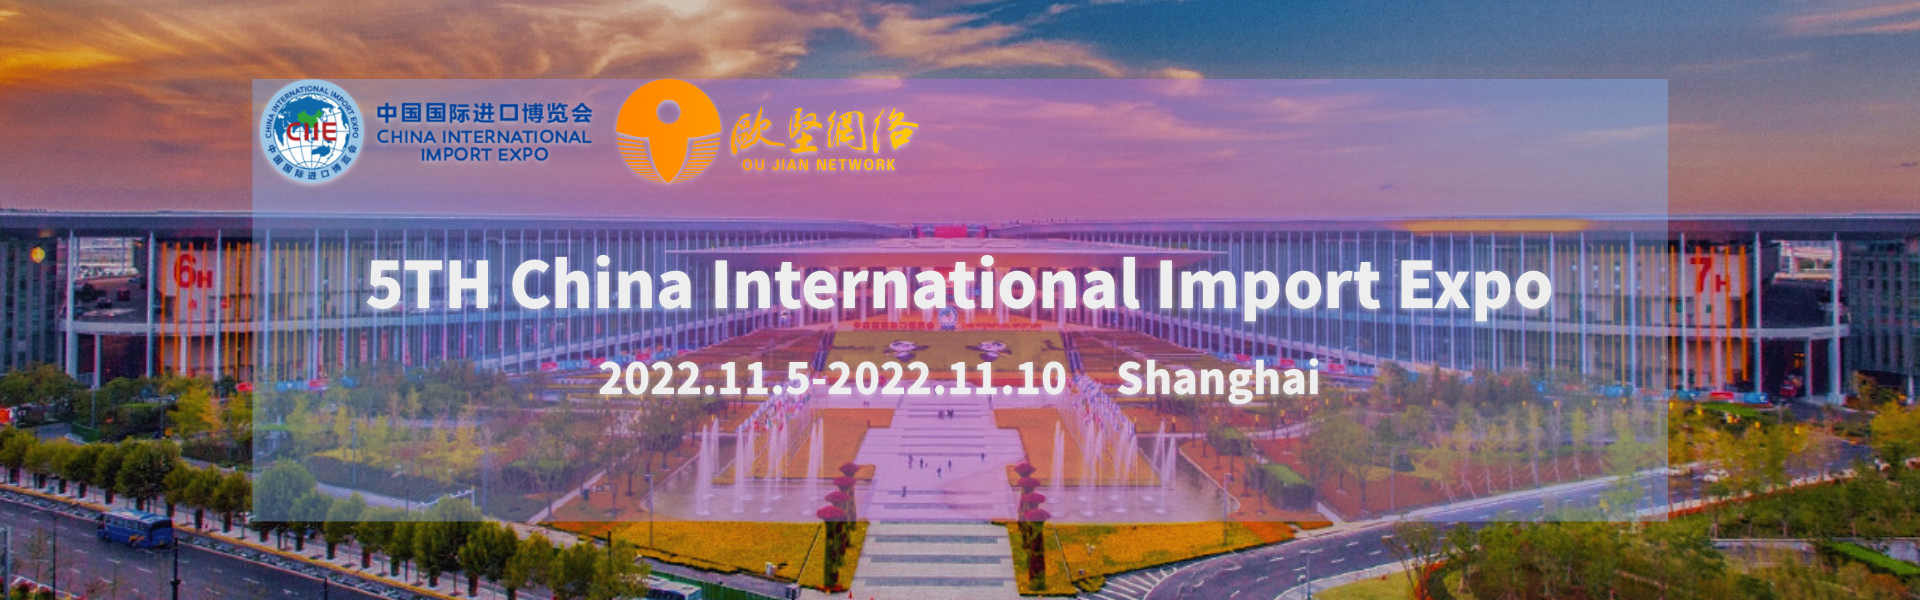 Shiinaha International Import Expo